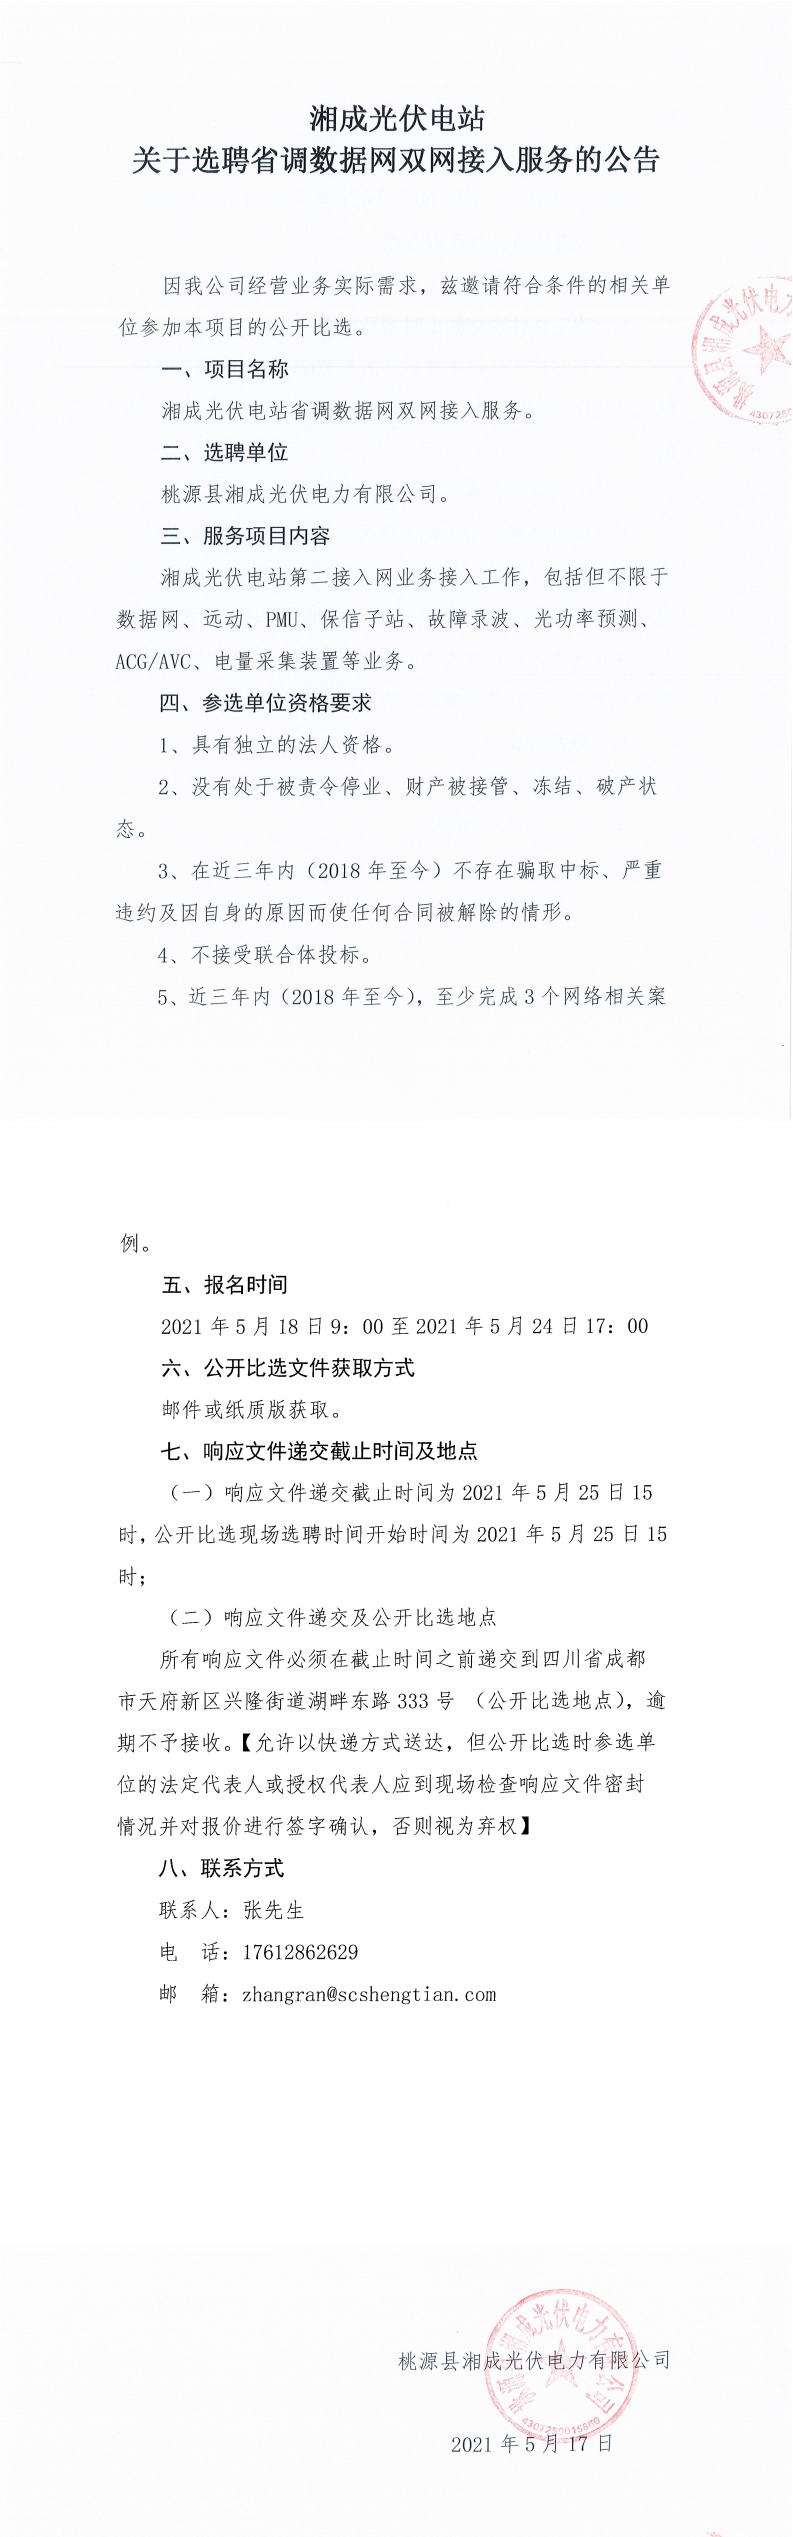 湘成光伏电站关于选聘省调数据网双网接入服务的公告_0.png